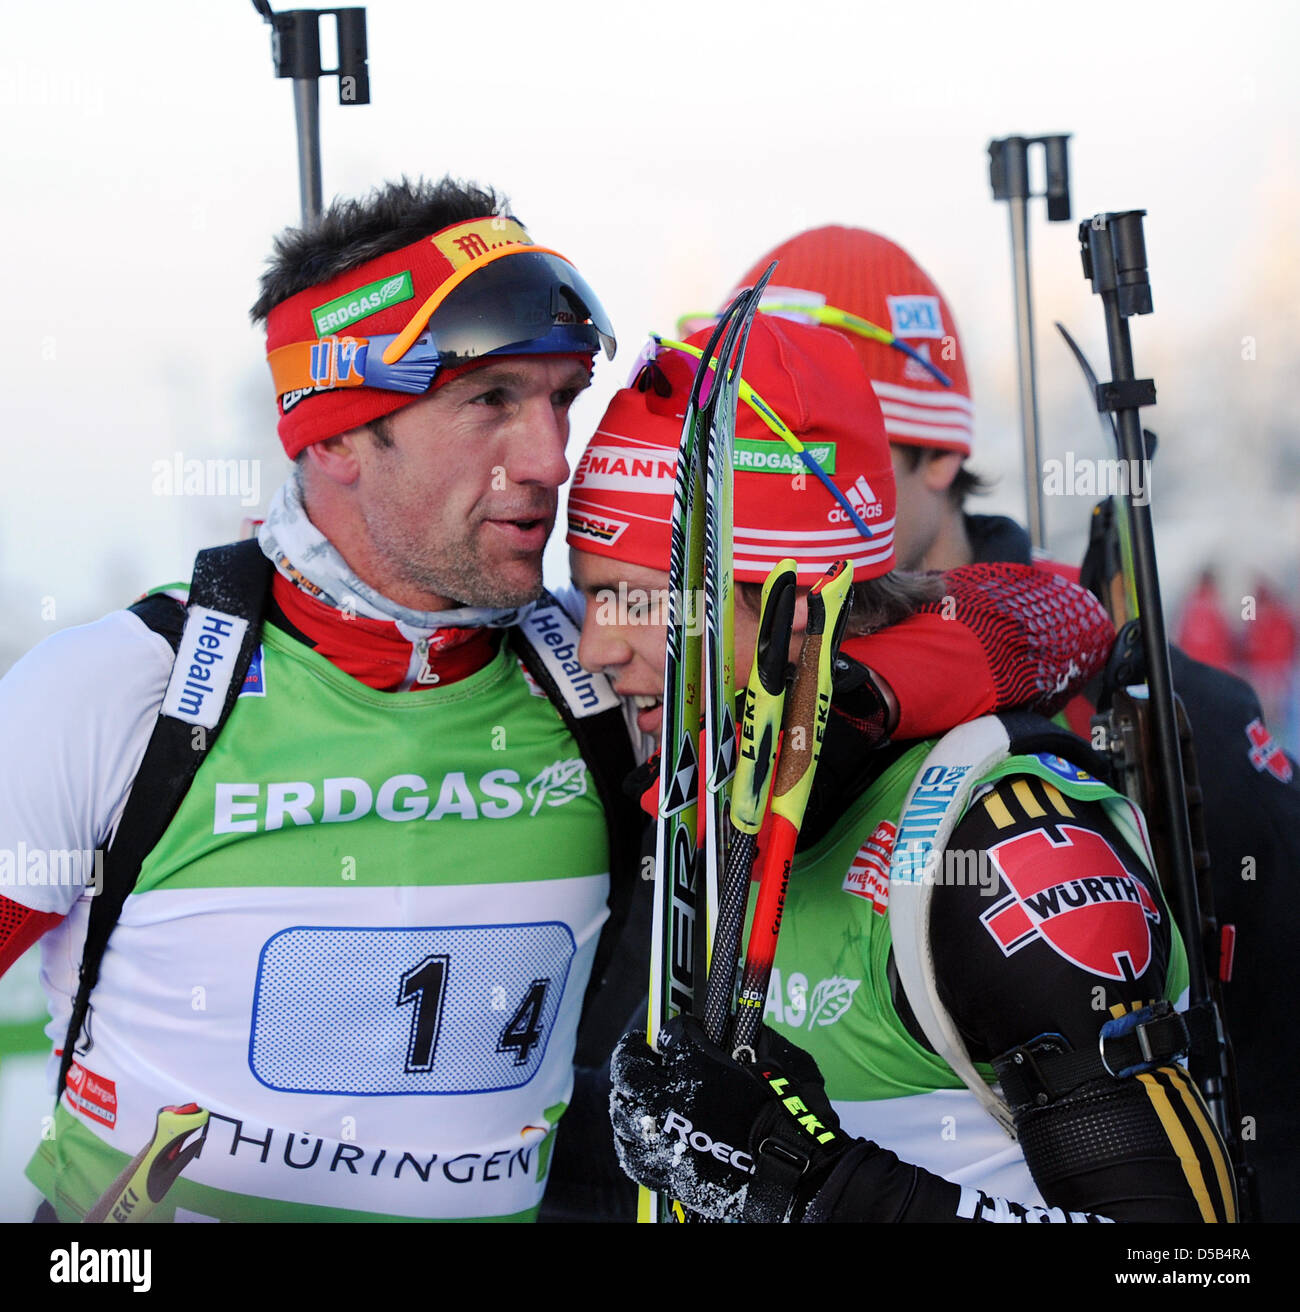 Dell'Austria Christoph Sumann (L) abbraccia la Germania Simon Schempff (R) nella finish area durante la Coppa del Mondo di Biathlon Event di Oberhof in Germania, 07 gennaio 2010. In Norvegia il relè team ha vinto l'evento davanti a Francia e Germania. Foto: HENDRIK SCHMIDT Foto Stock